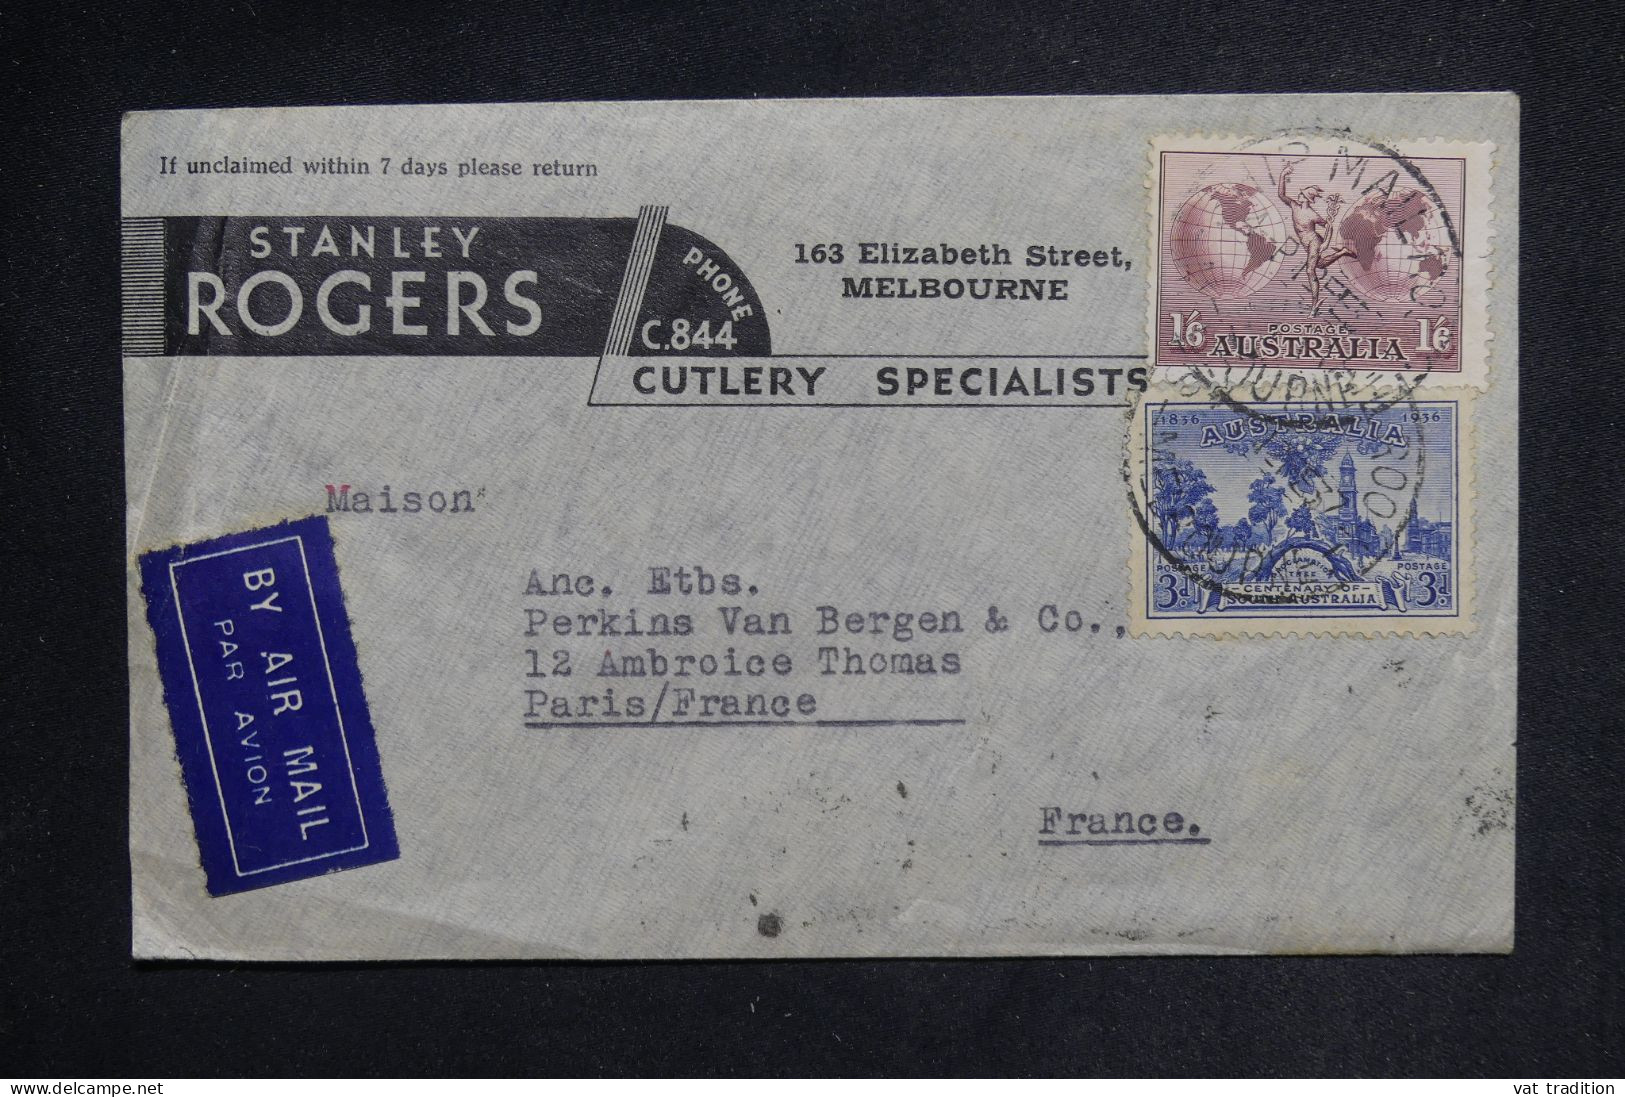 AUSTRALIE - Enveloppe Commerciale De Melbourne Pour Paris En 1937 Par Avion - L 149854 - Postmark Collection